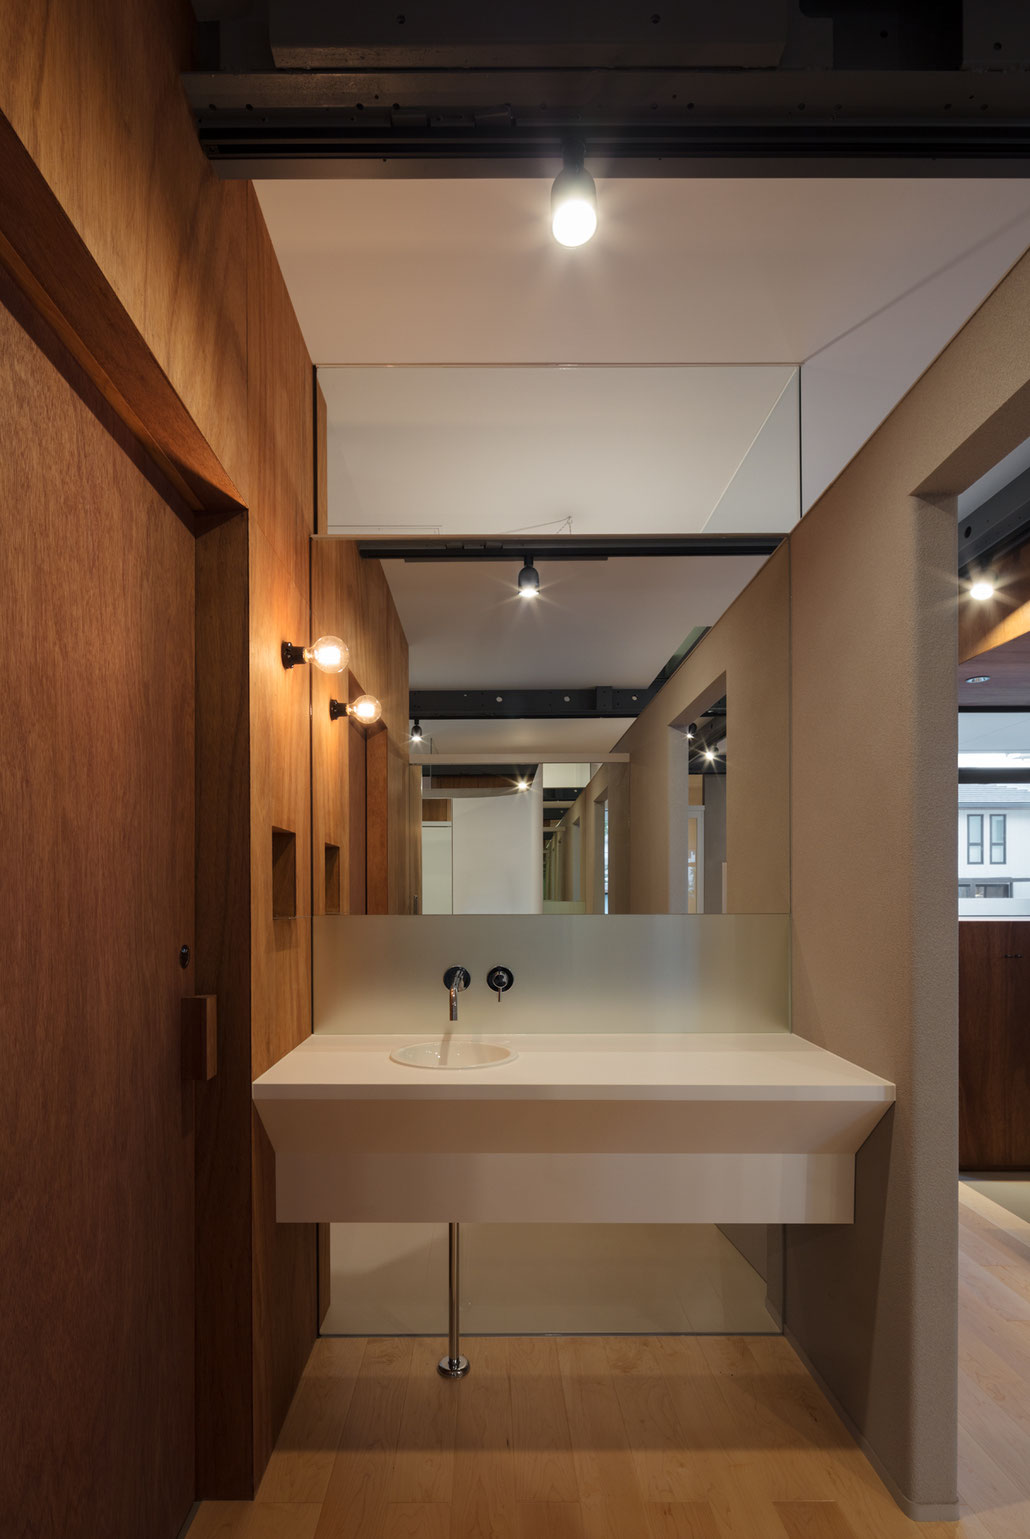 角建築研究室(代表 角大輔 Daisuke Sumi)による福岡県久留米市での戸建てリノベーション。いろどり整骨院/住宅の洗面スペース内観写真。